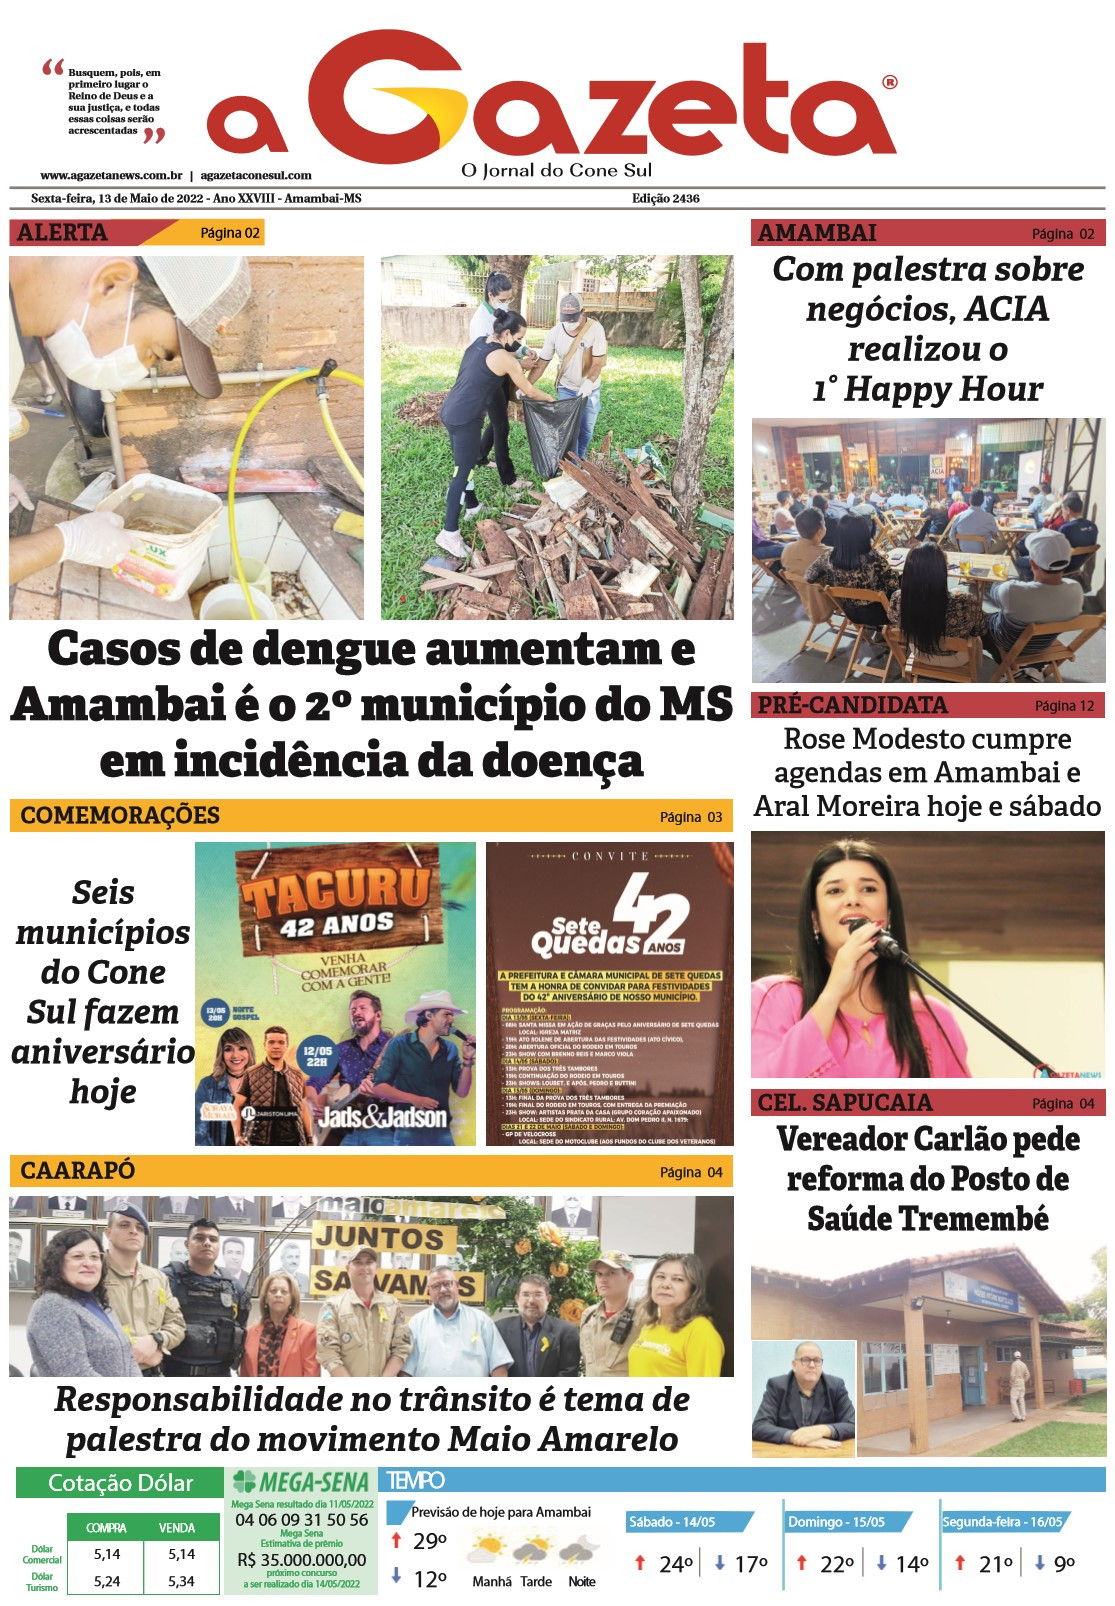 Confira a versão digital do jornal impresso A Gazeta desta sexta-feira, dia 13